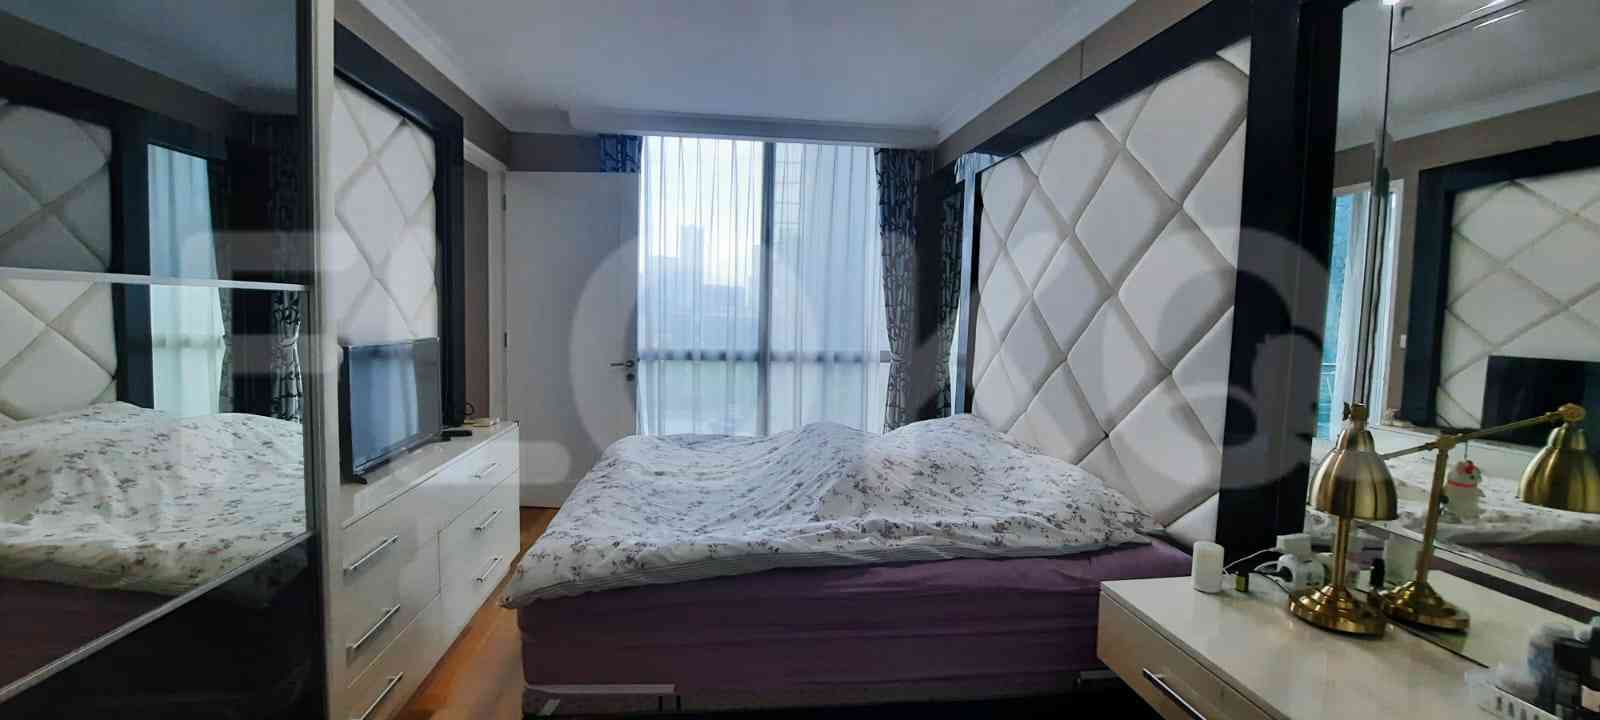 1 Bedroom on 15th Floor for Rent in Residence 8 Senopati - fseadd 2